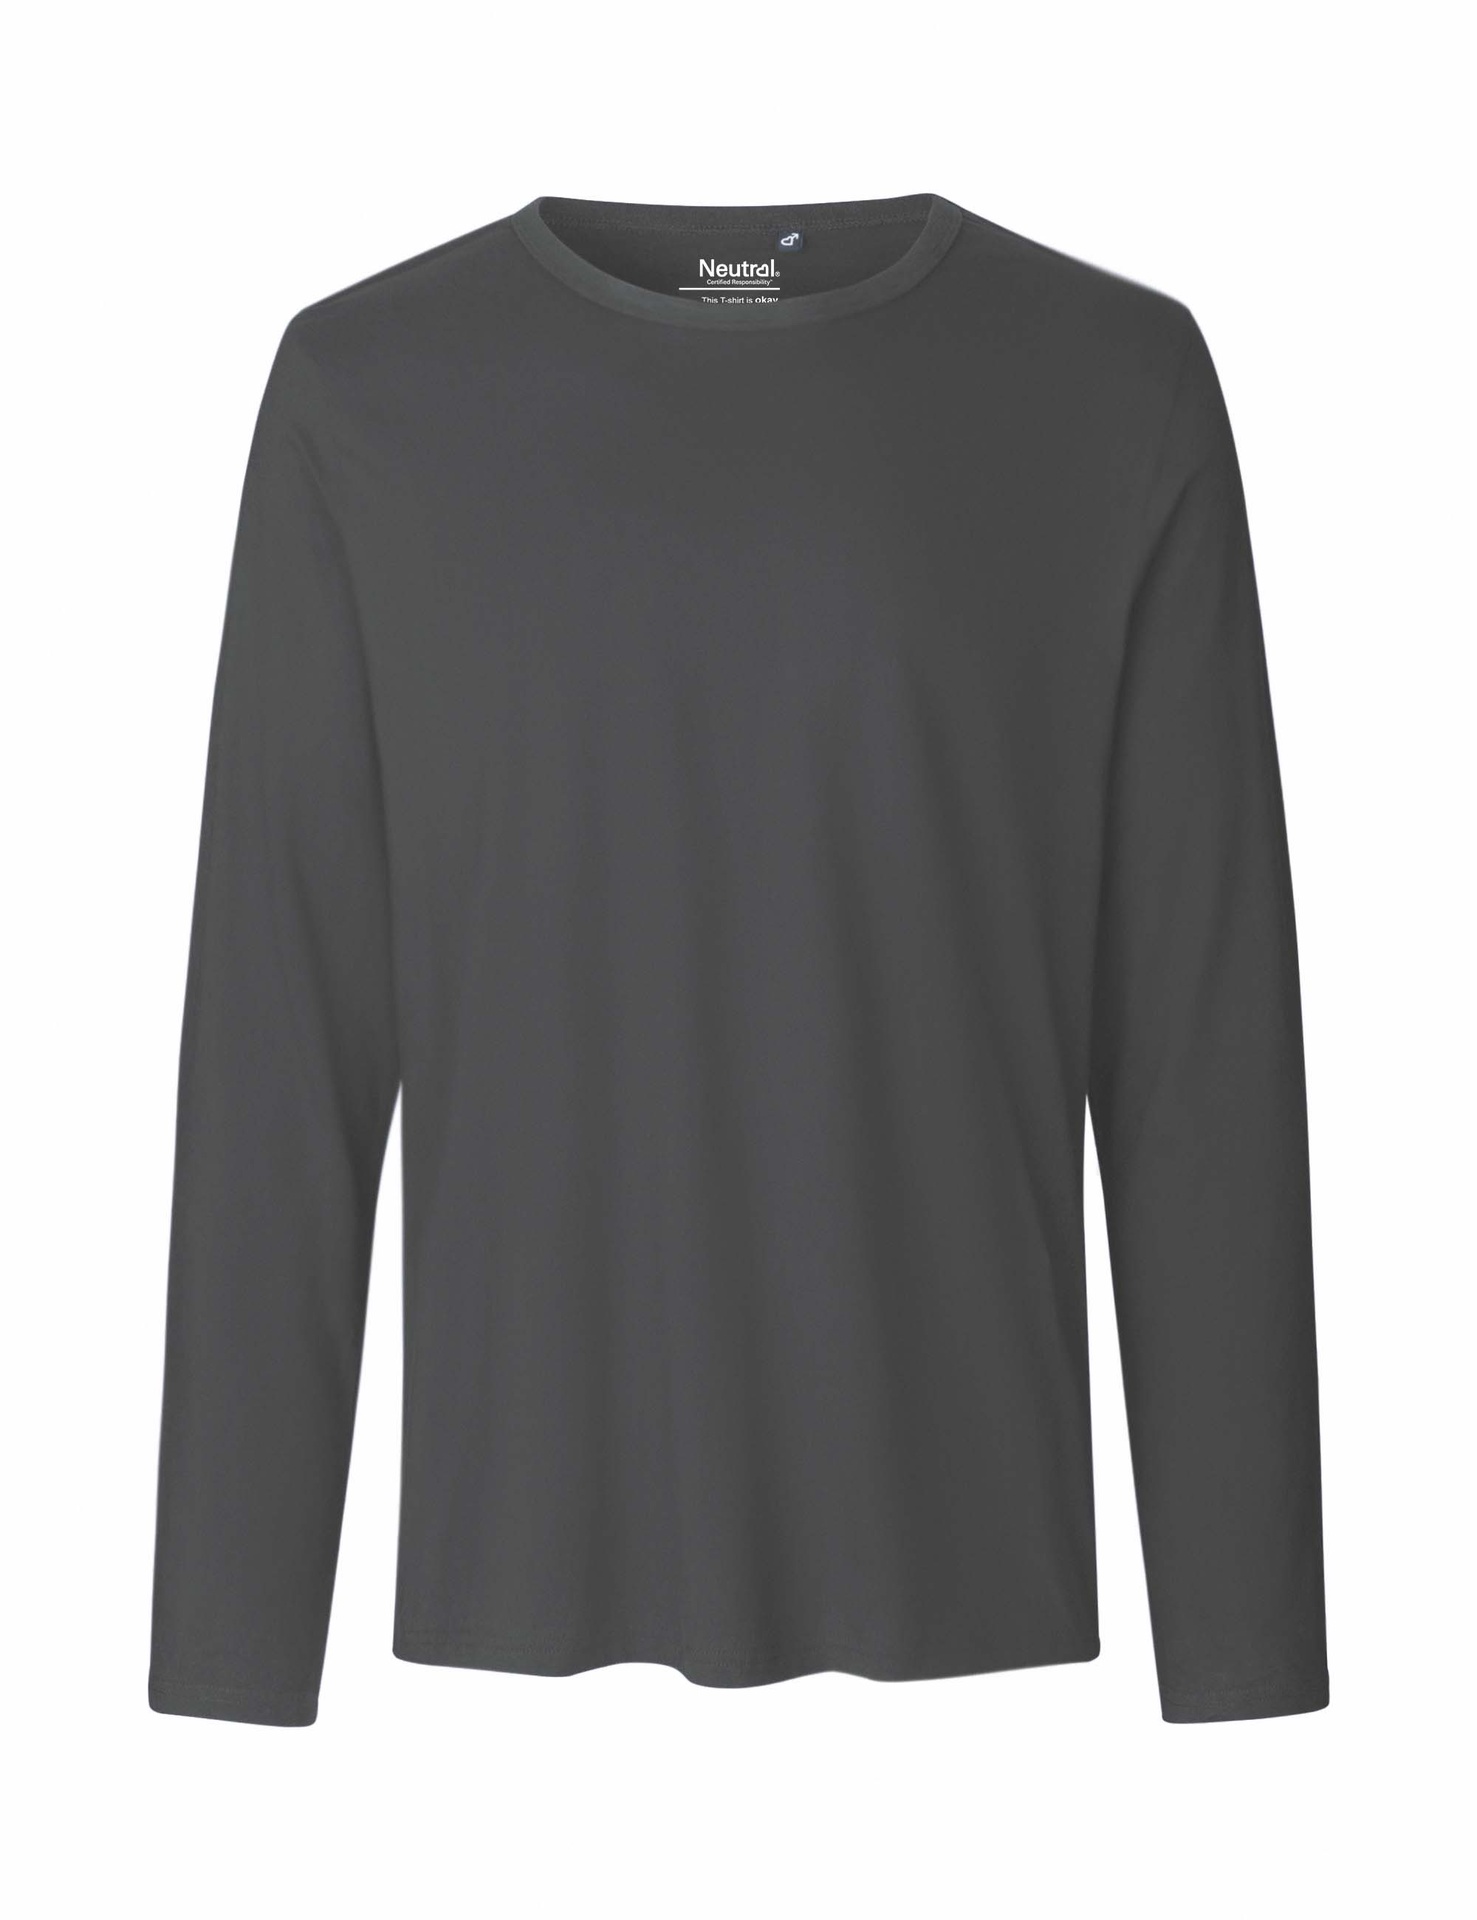 [PR/02366] Mens Long Sleeve T-Shirt (Charcoal 06, 2XL)